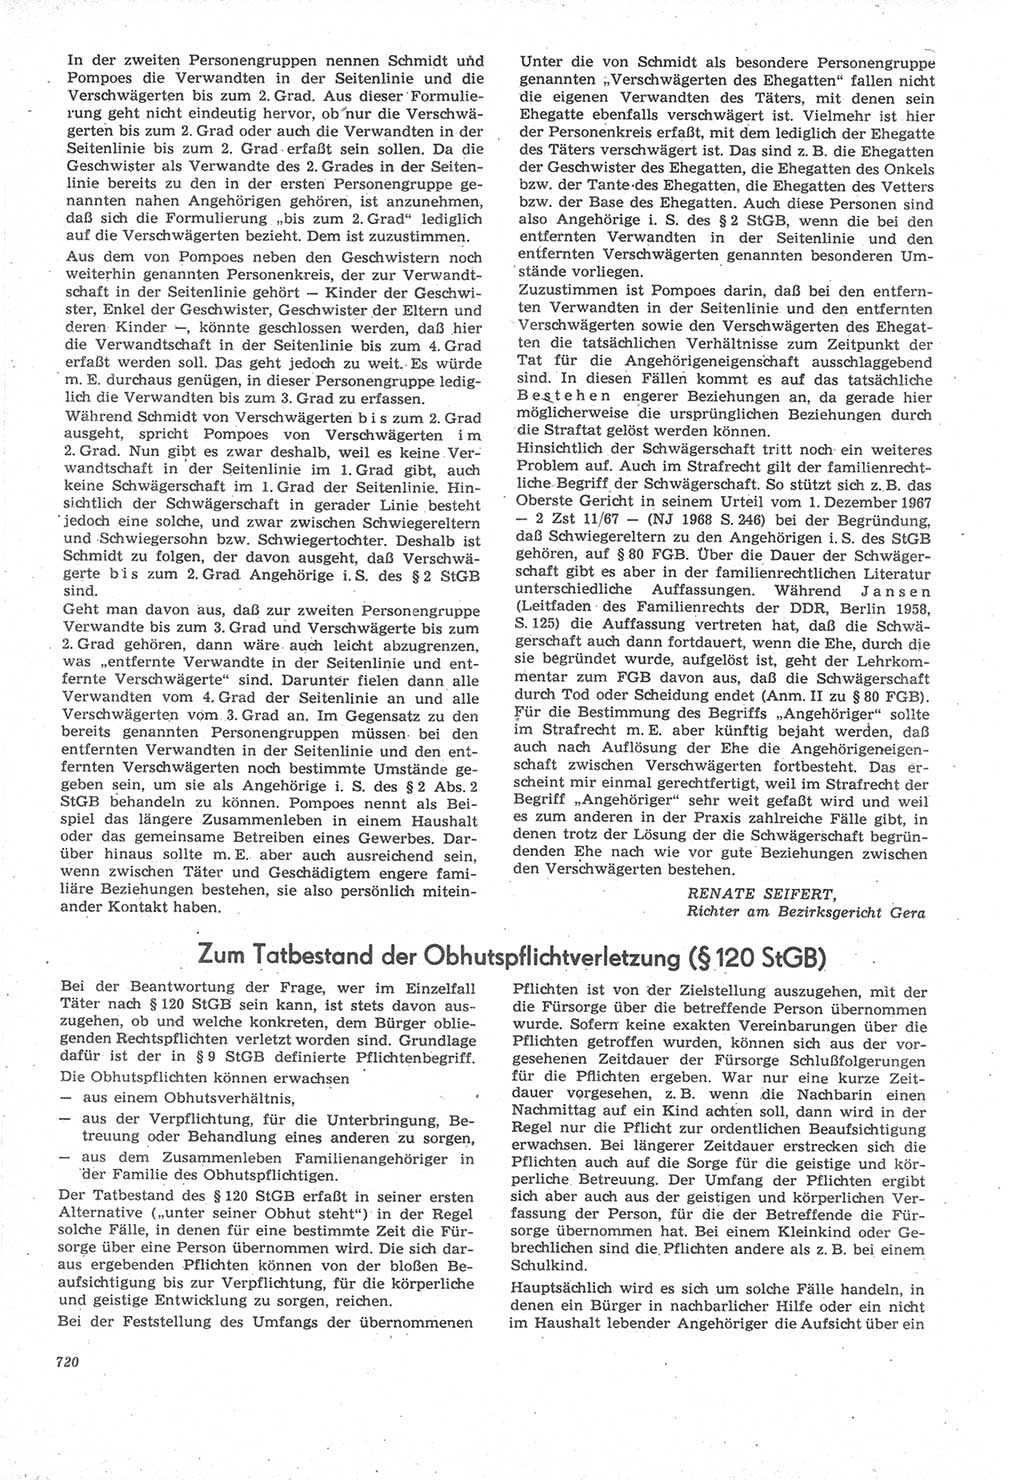 Neue Justiz (NJ), Zeitschrift für Recht und Rechtswissenschaft [Deutsche Demokratische Republik (DDR)], 22. Jahrgang 1968, Seite 720 (NJ DDR 1968, S. 720)